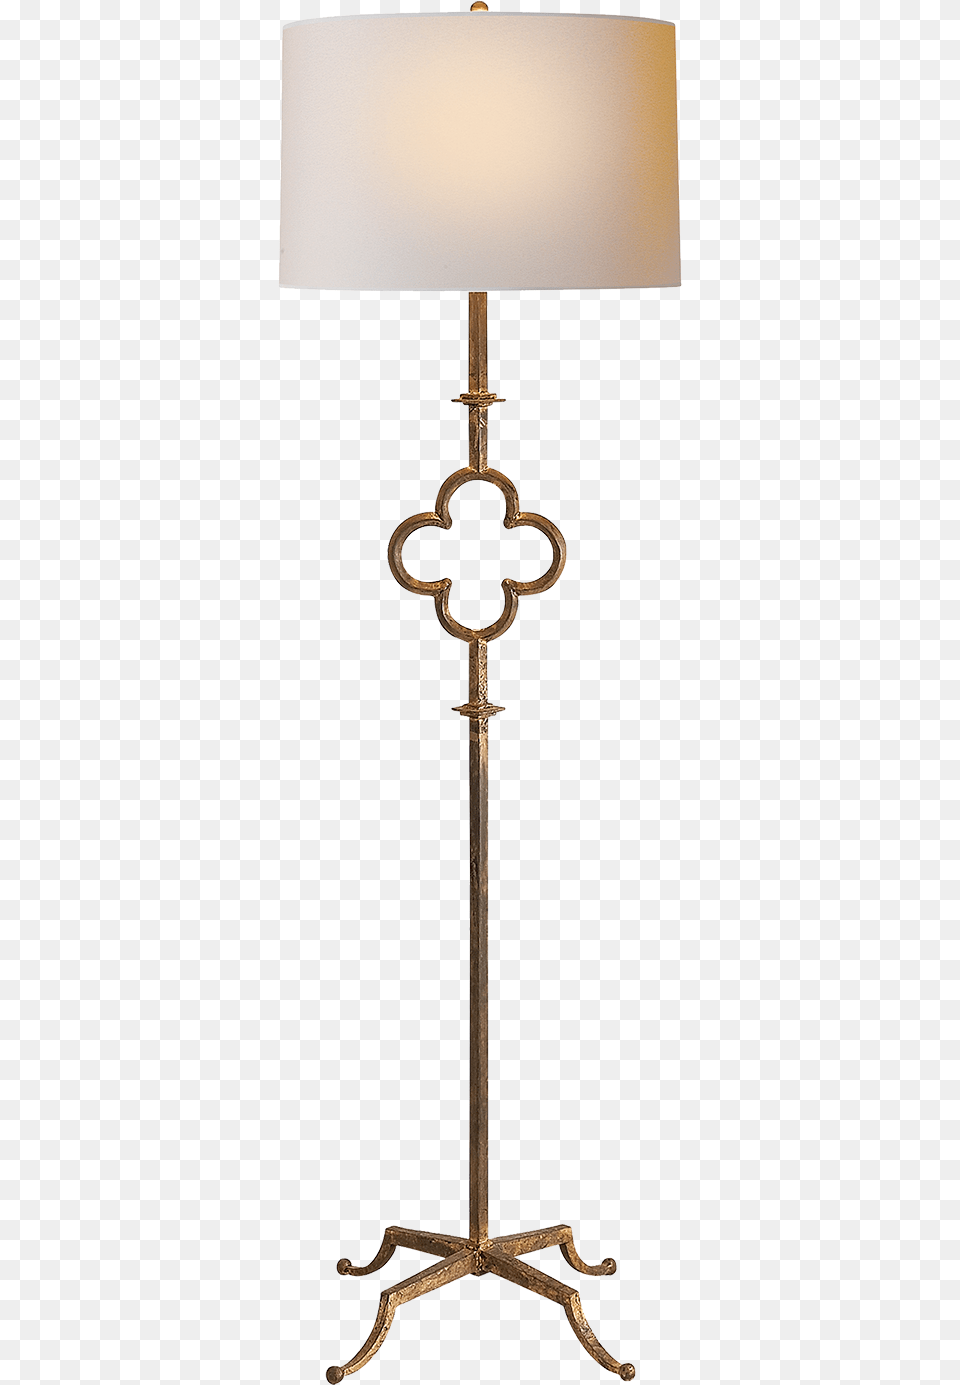 Circa Lighting Floor Lamps, Lamp, Lampshade, Furniture Free Transparent Png